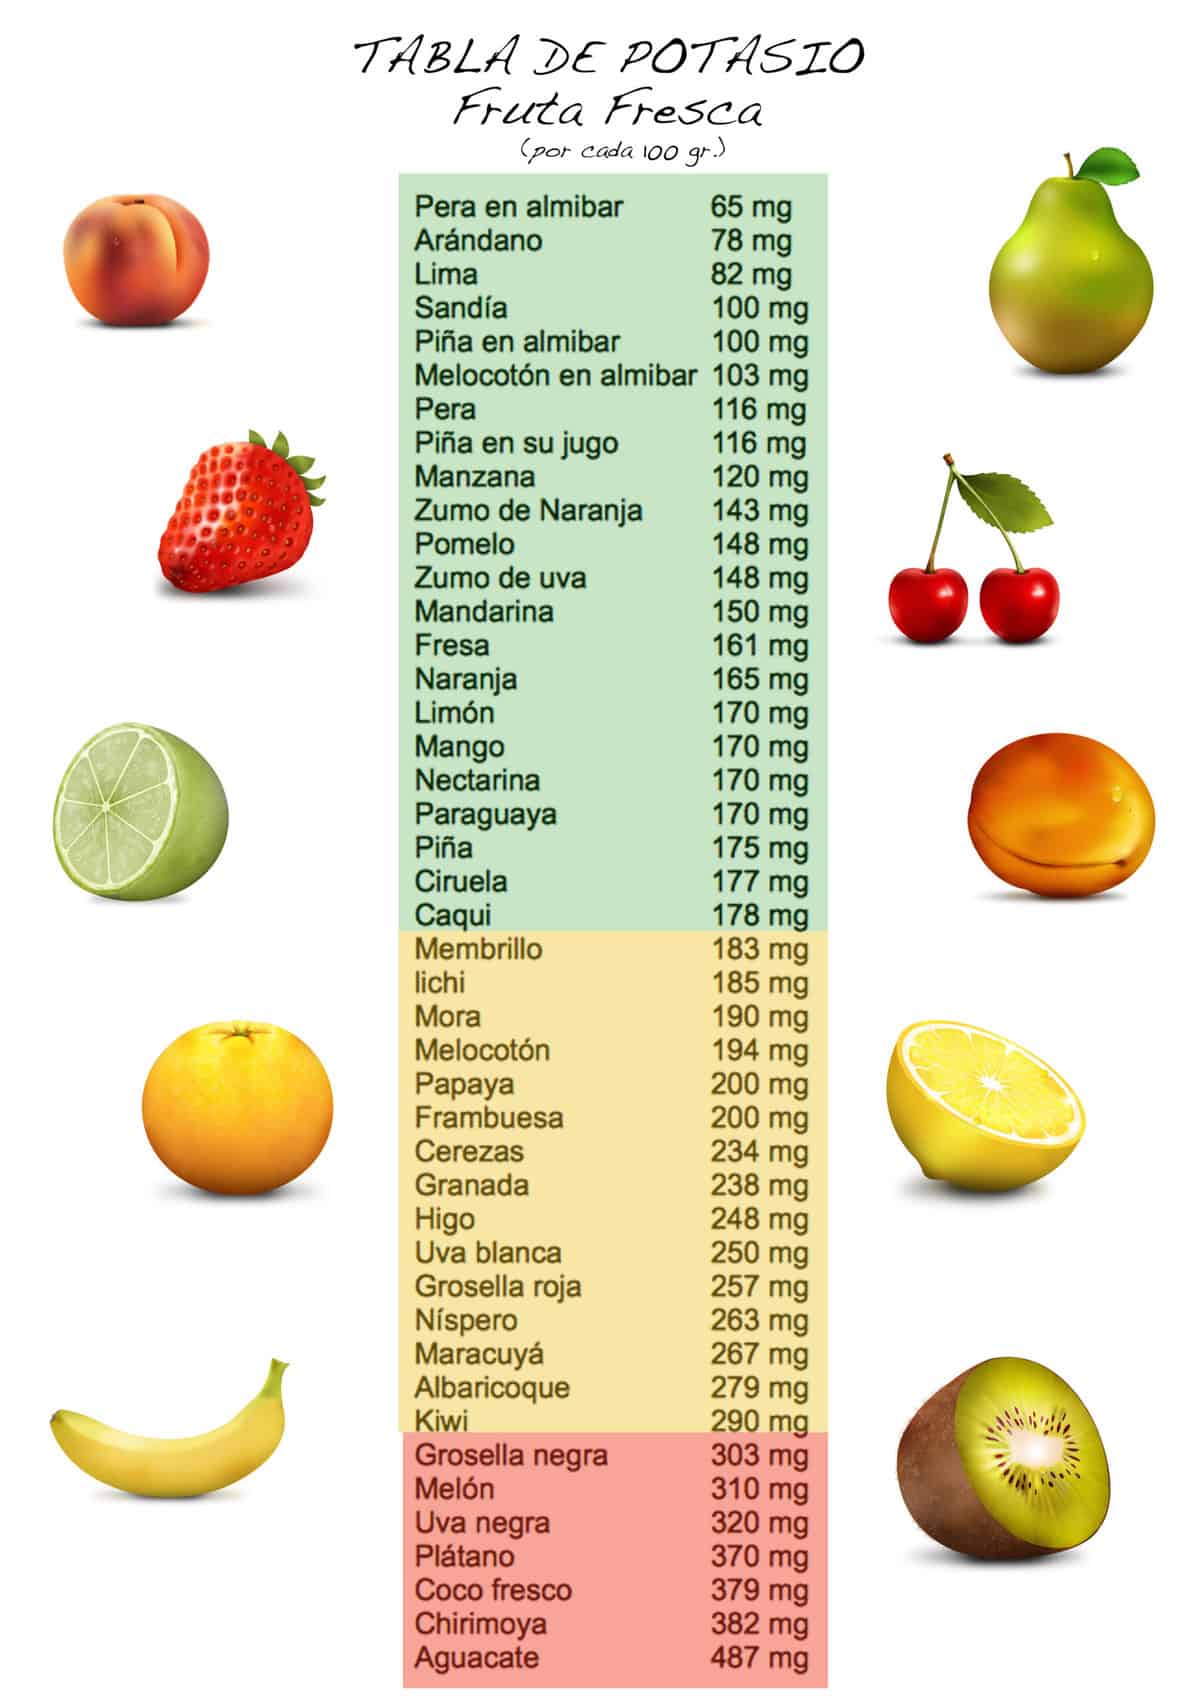 cantidad de potasio en las frutas